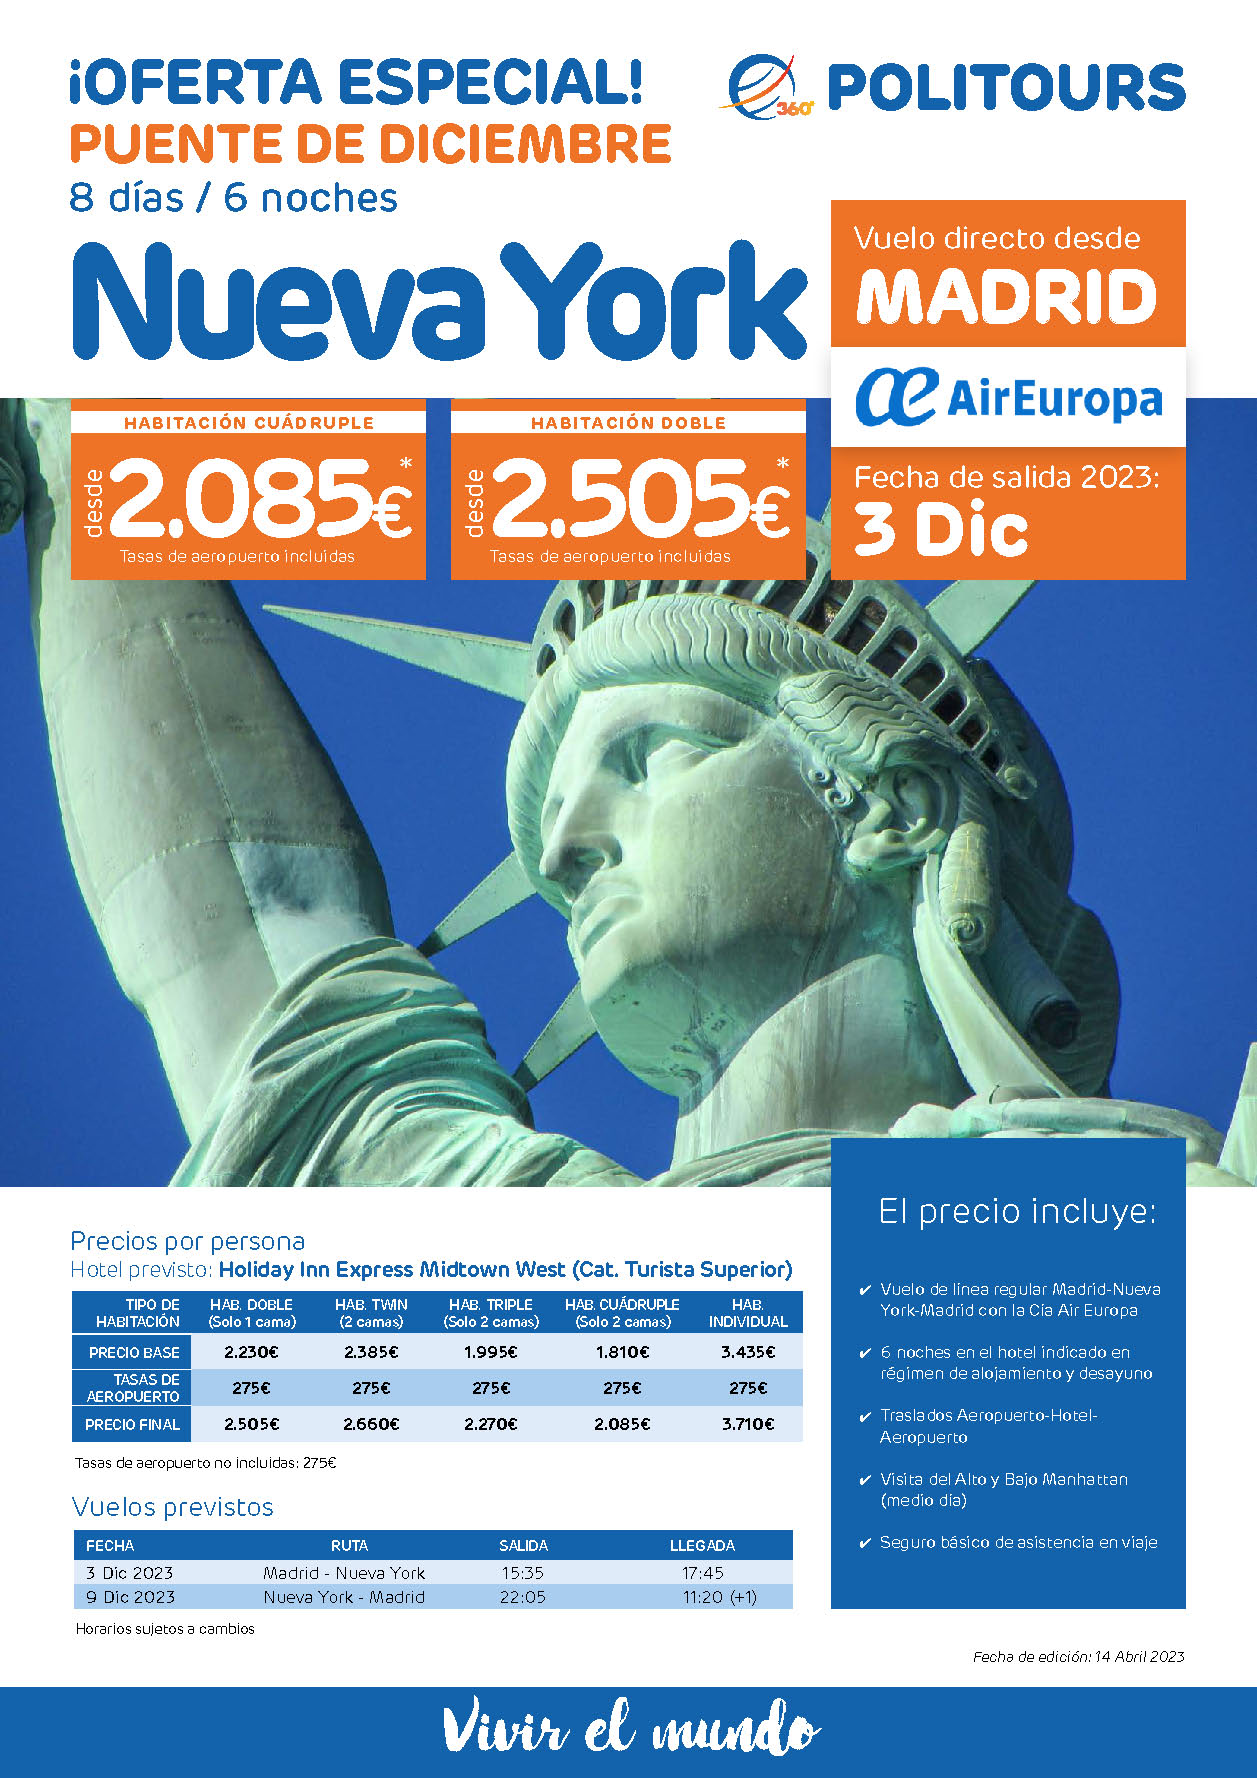 Oferta Politours Puente de Diciembre 2023 Estancia en Nueva York 8 dias salida 3 diciembre en vuelo directo desde Madrid Air Europa